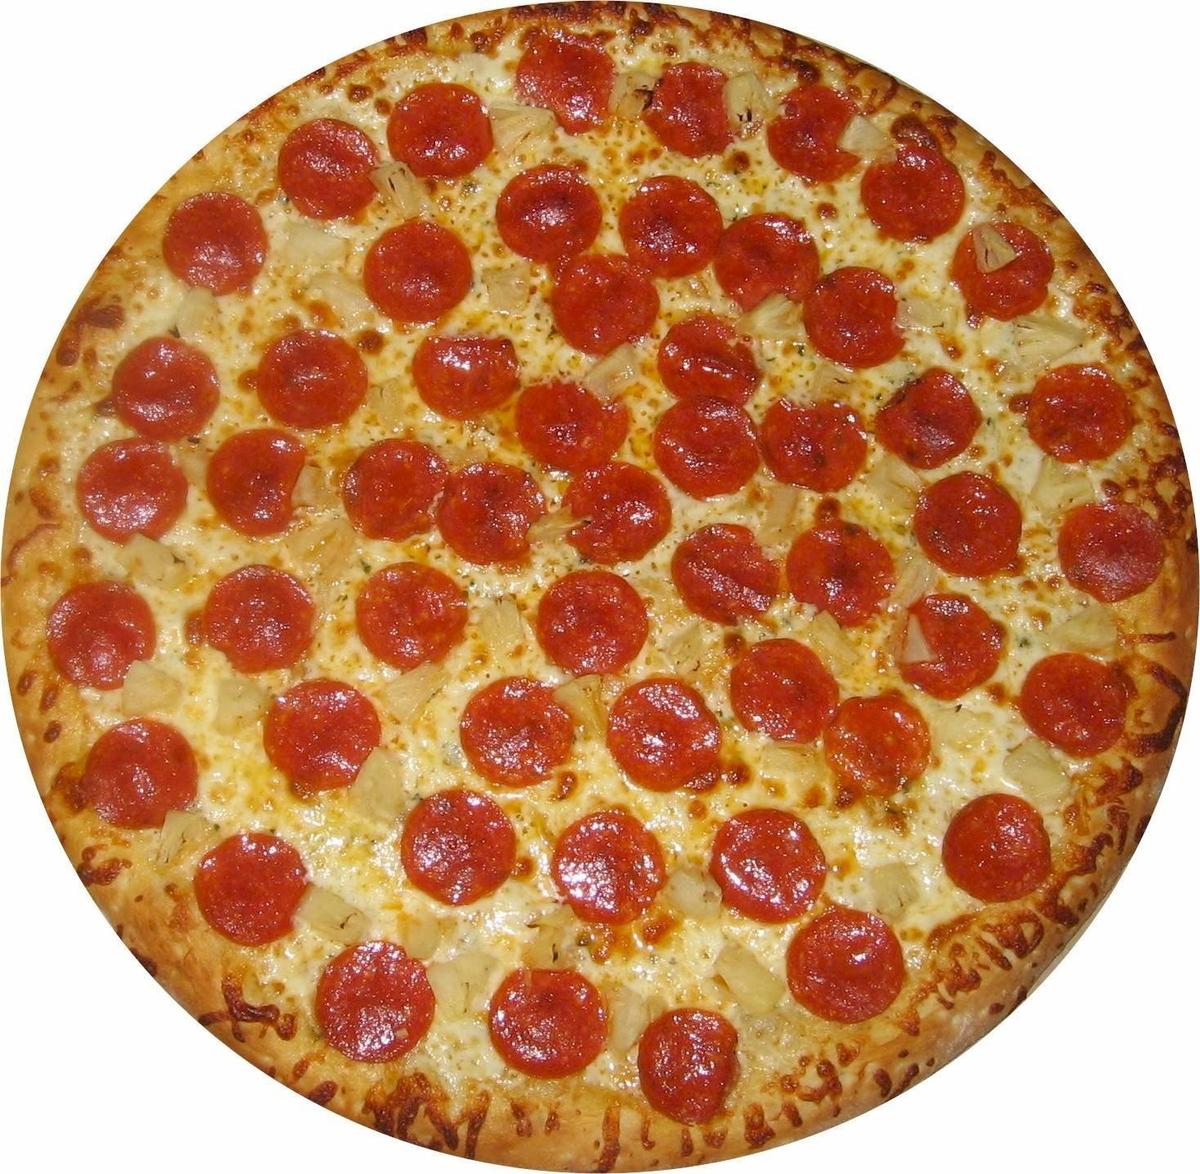 PepperoniPizza-full